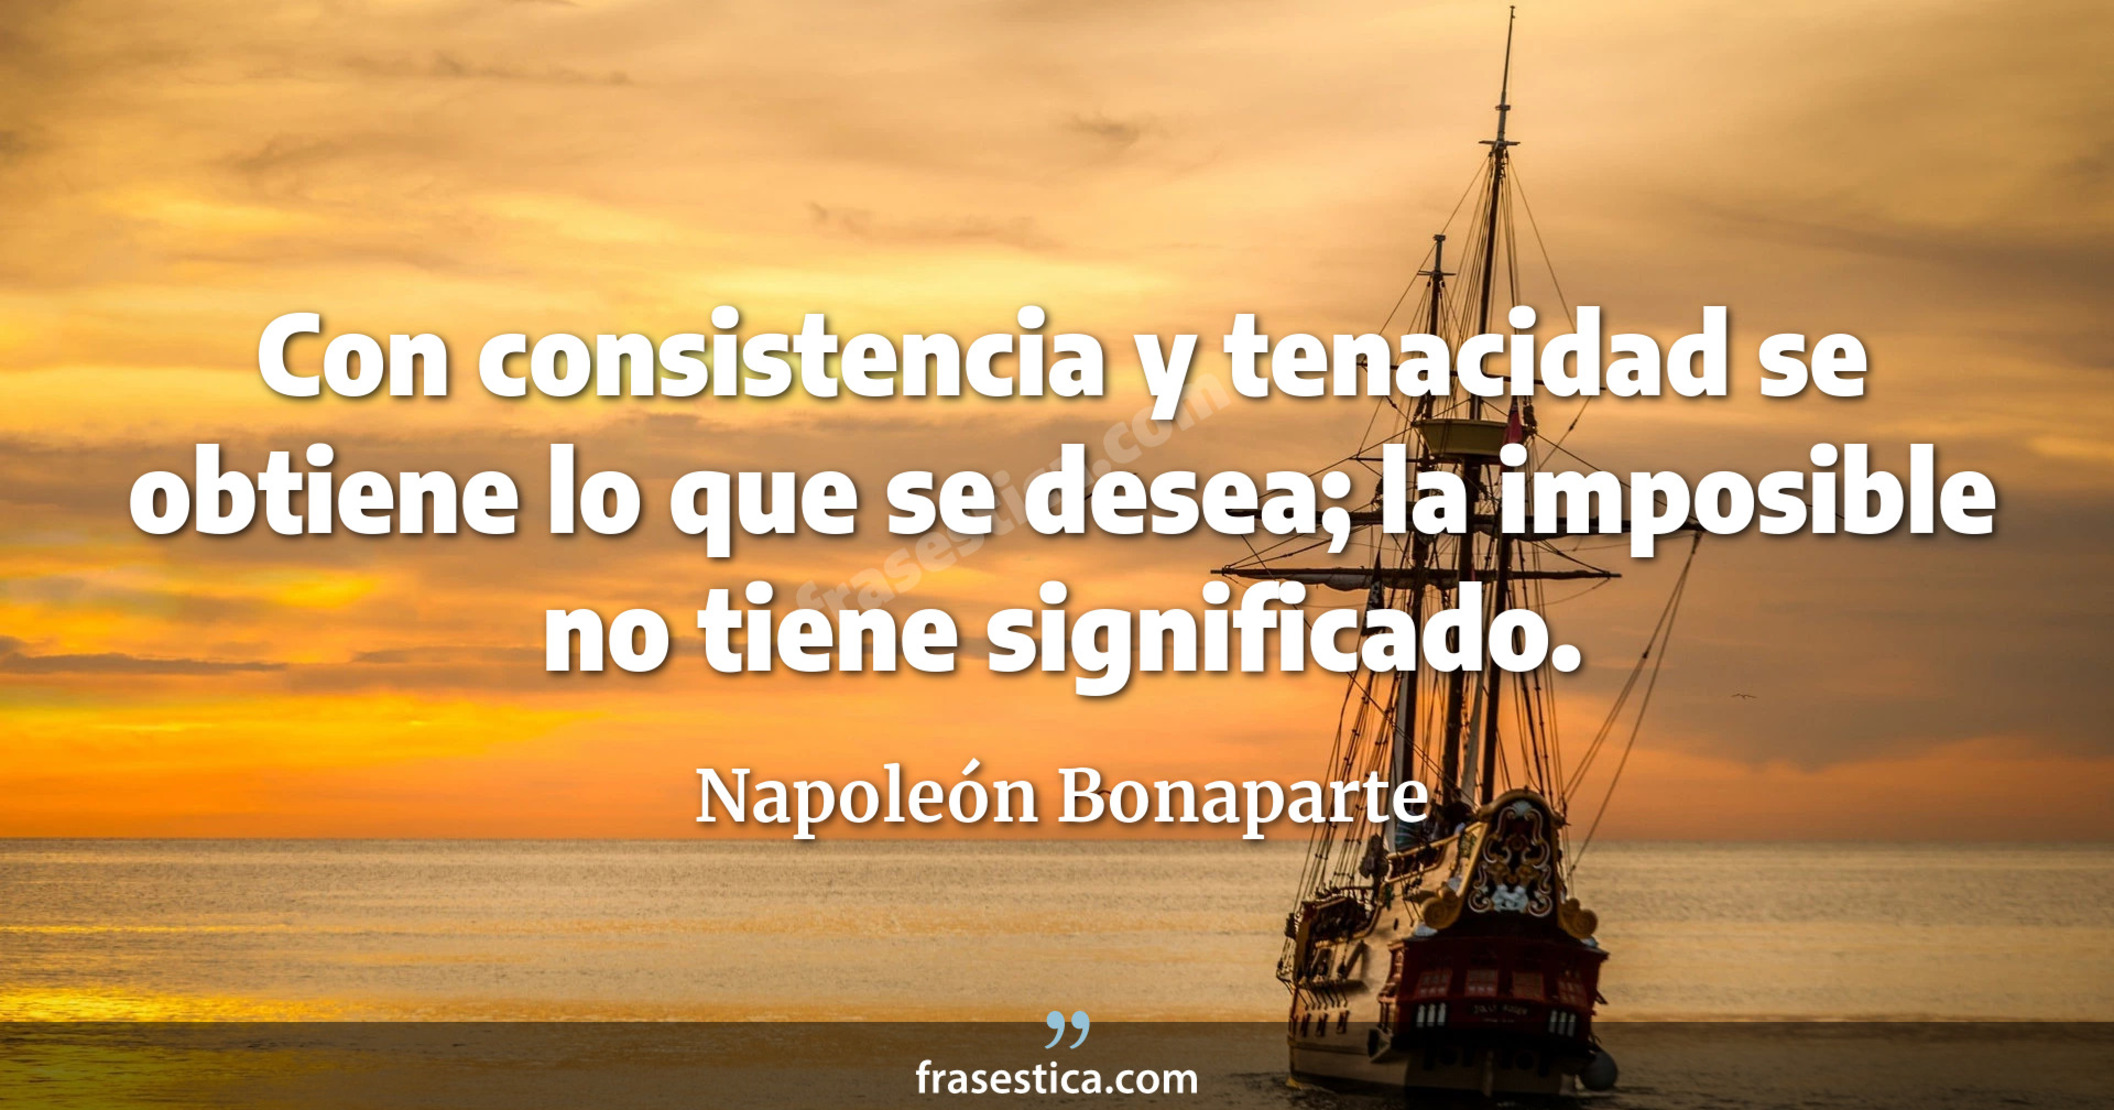 Con consistencia y tenacidad se obtiene lo que se desea; la  imposible no tiene significado. - Napoleón Bonaparte